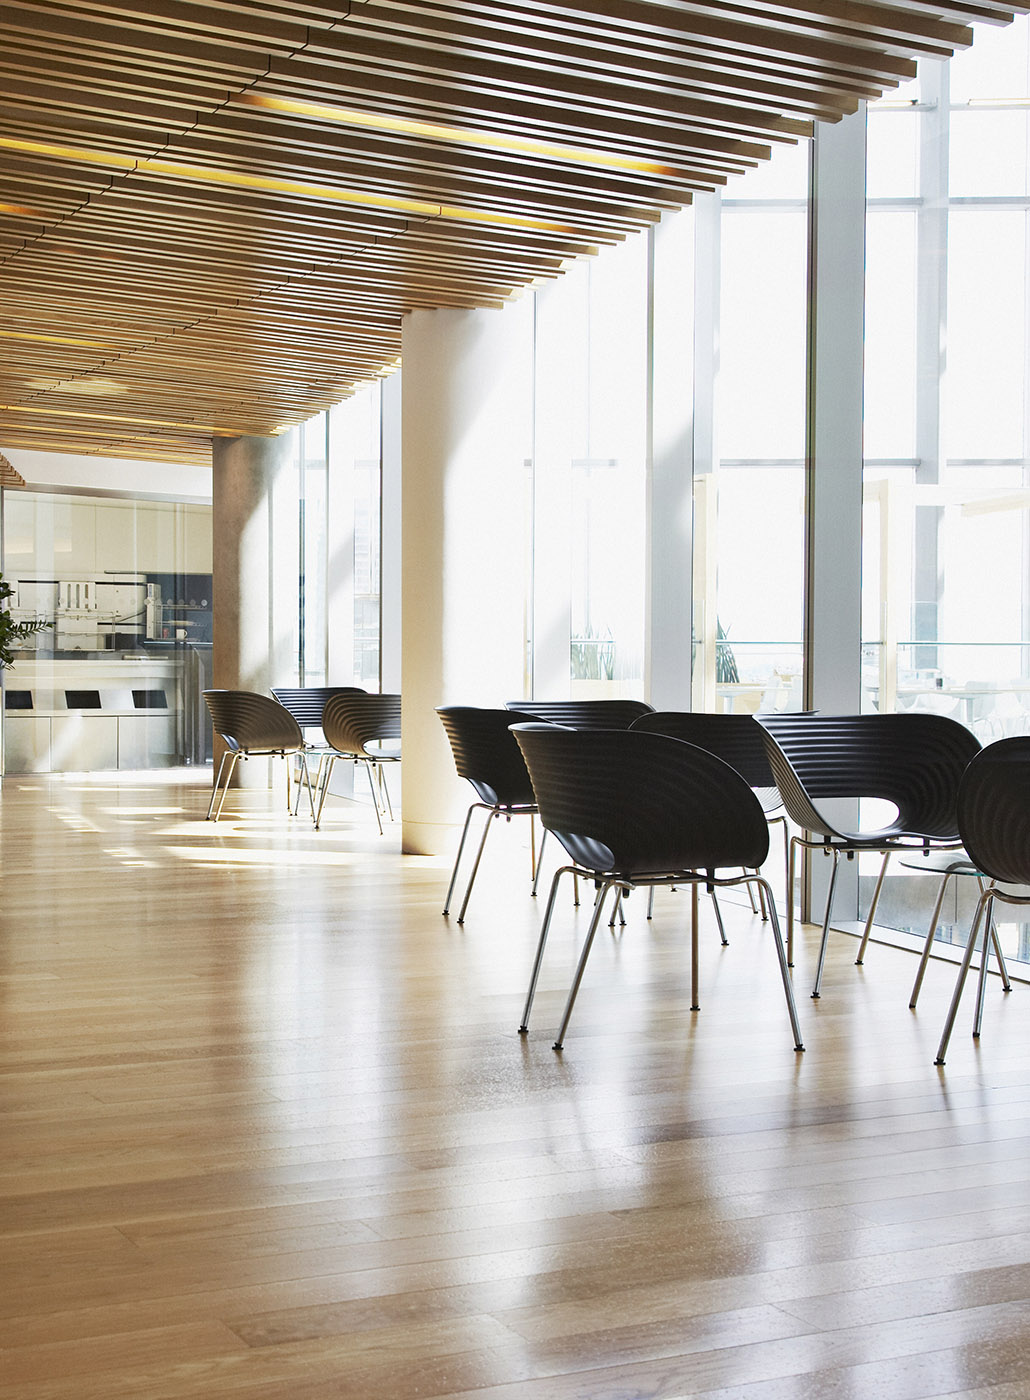 Foto de cadeiras dispostas em um espaço de trabalho moderno e bem iluminado com piso de madeira